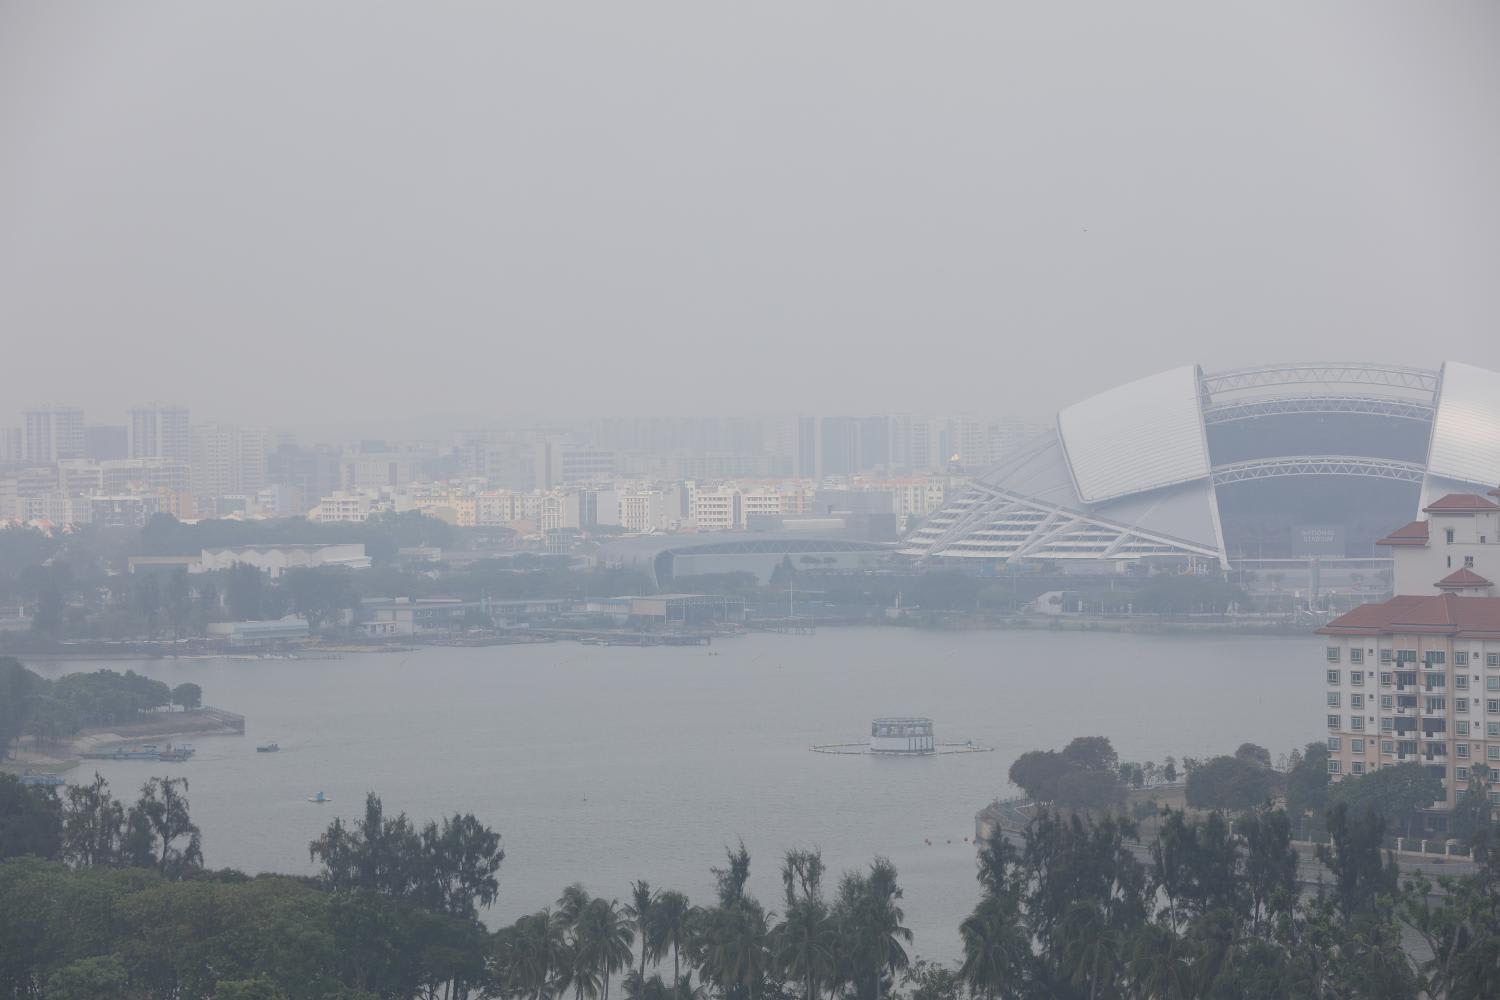 Hazy conditions in 2019.